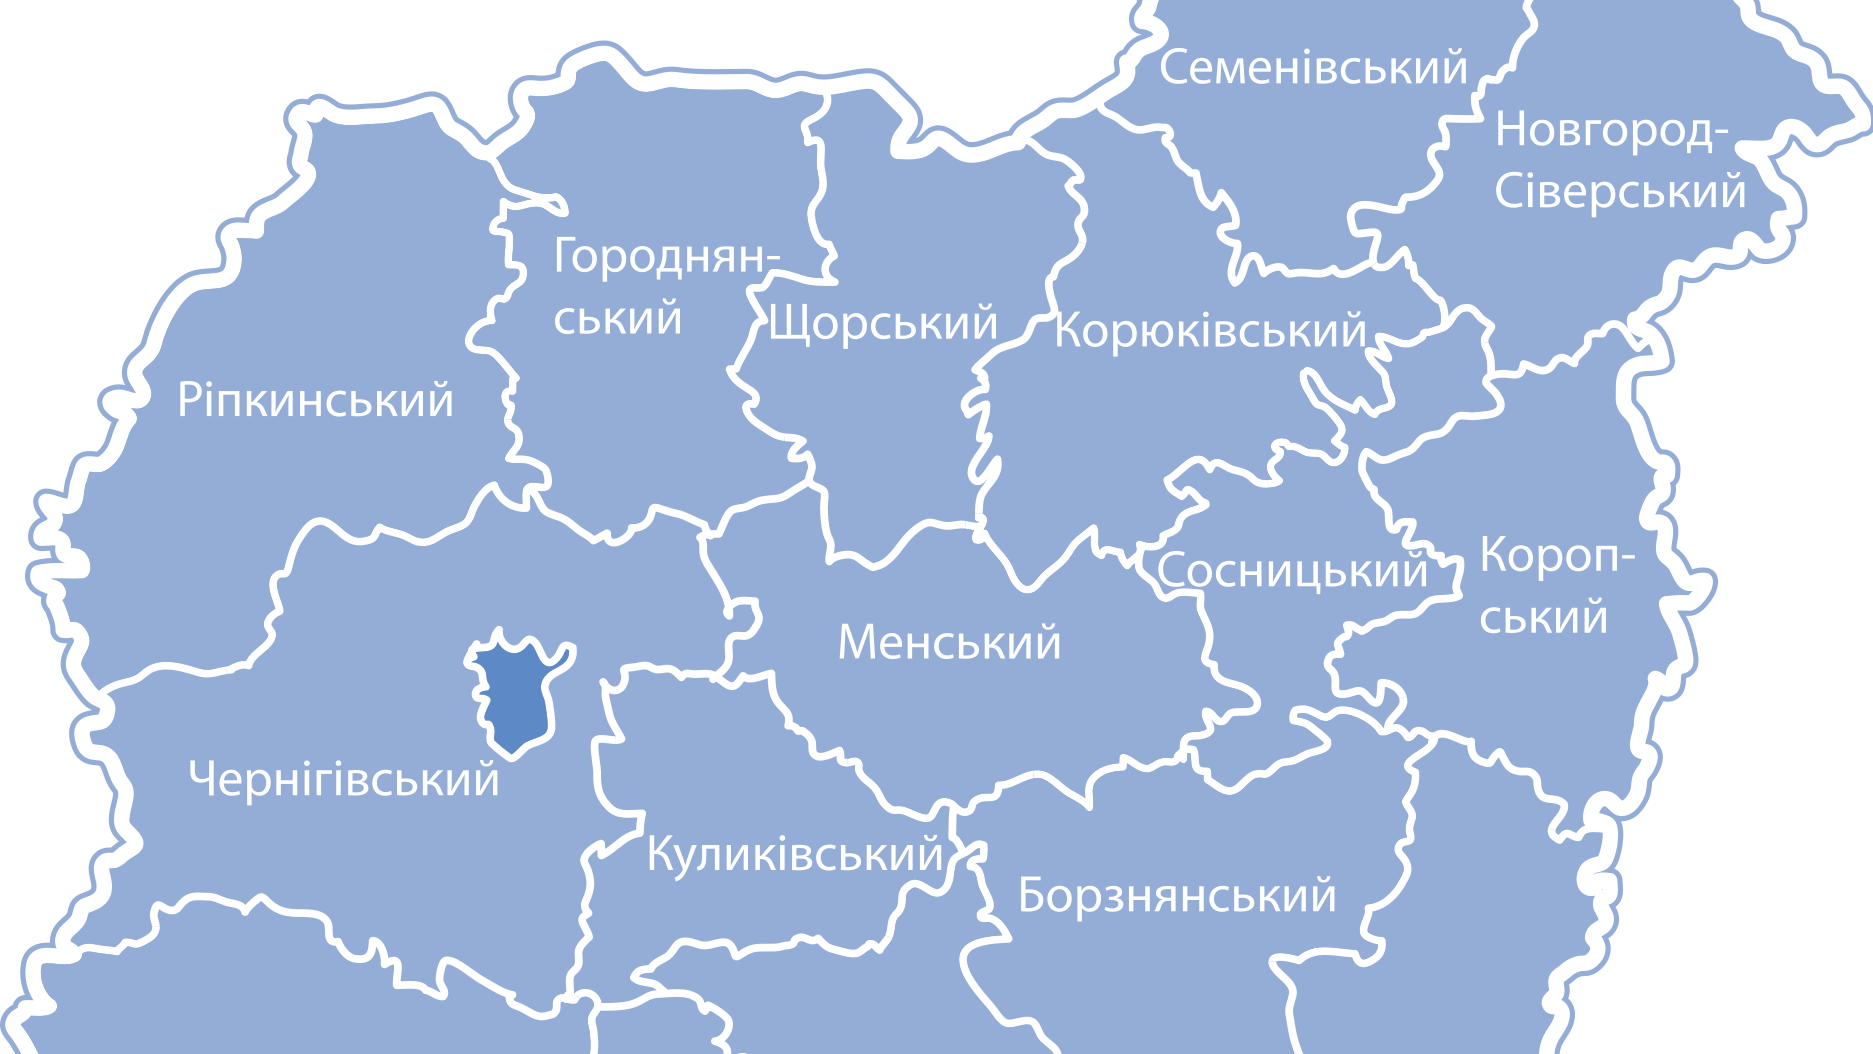 Черниговская область (северная часть)